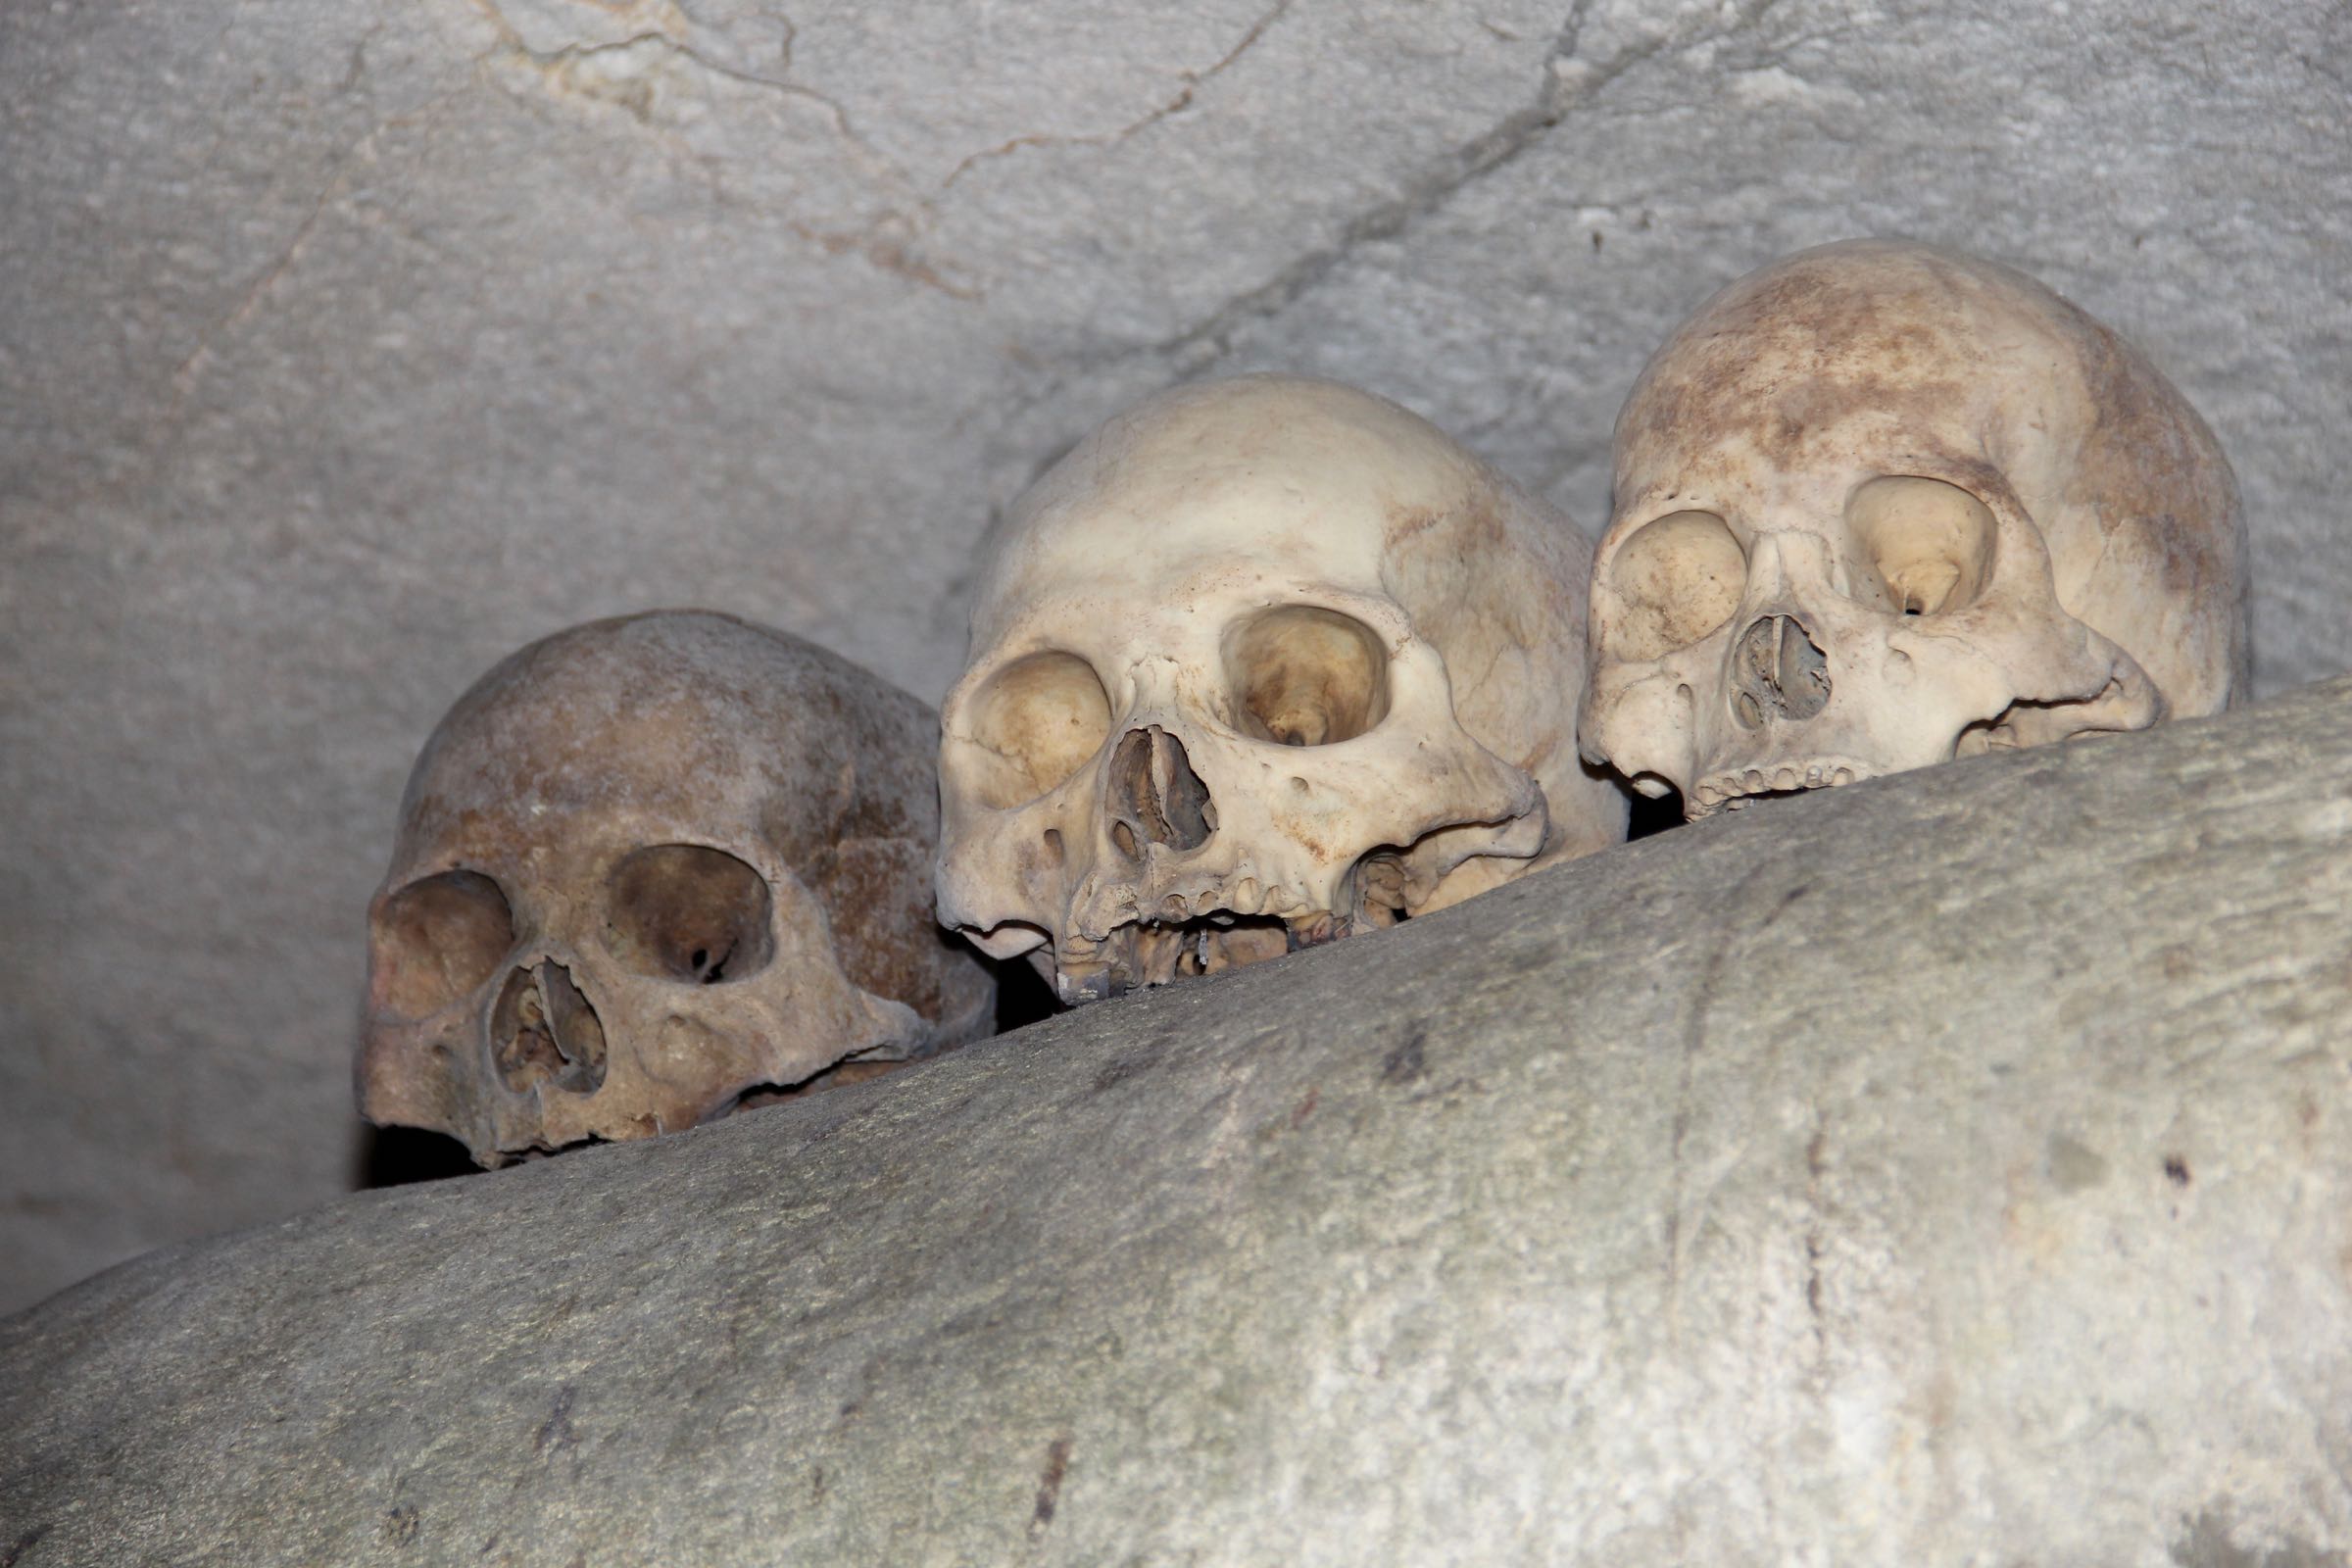 Totenschädel in einer Grabhöhle in Tana Toraja, Sulawesi, Indonesien